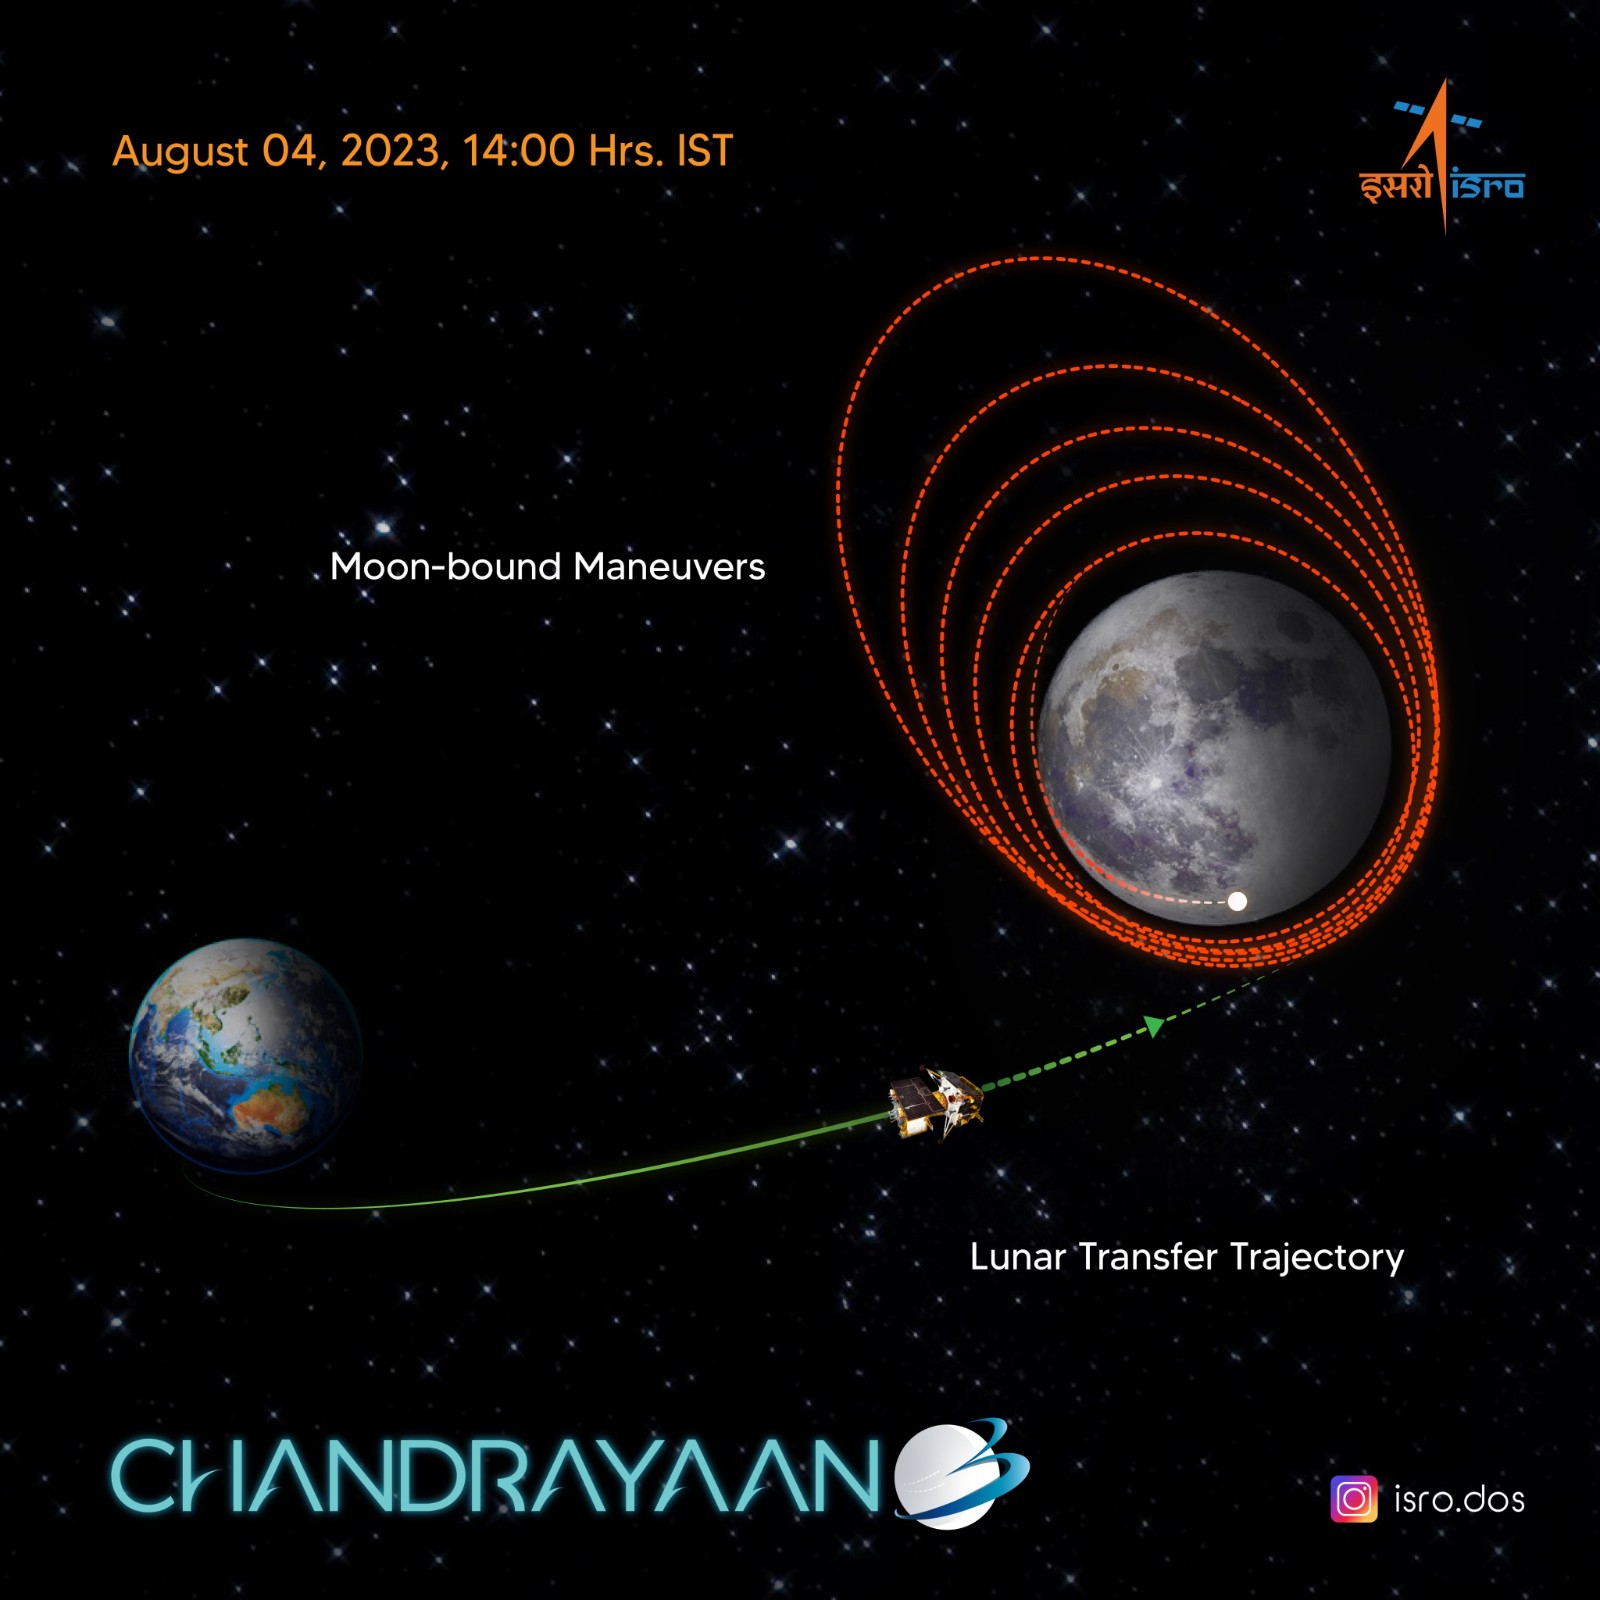 印度再次挑战登月 月船3号飞船估量8月23日上岸月球